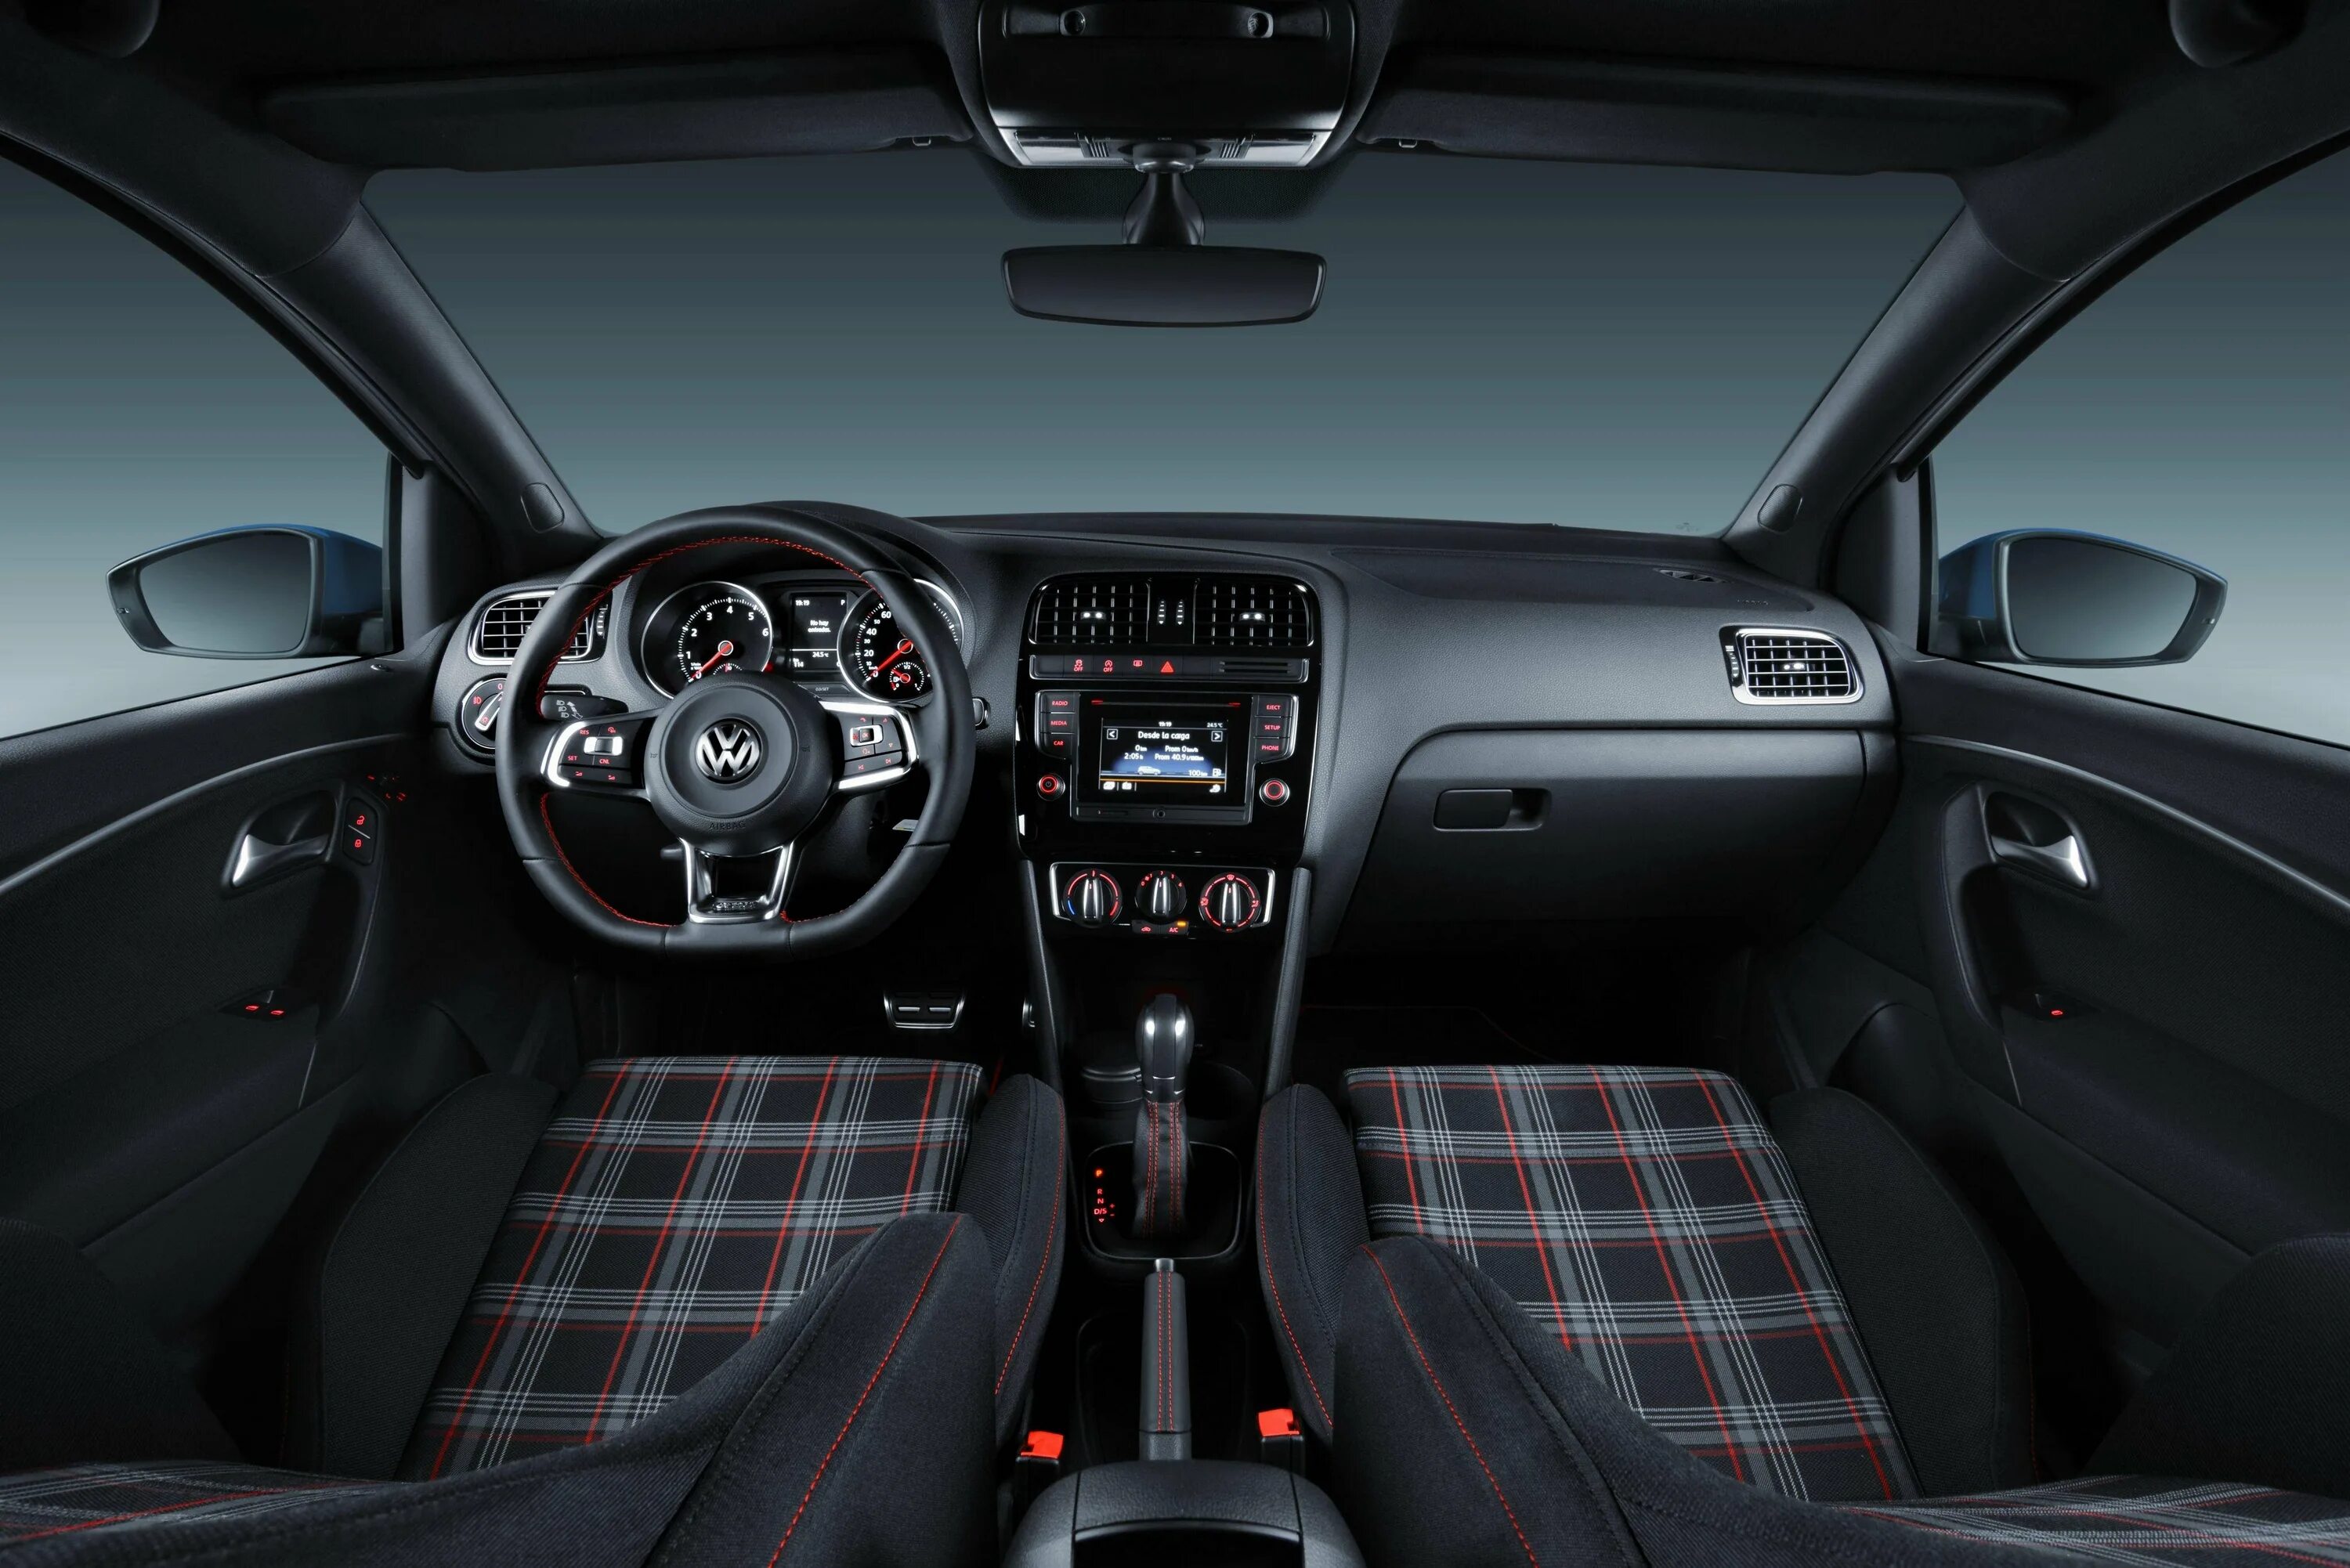 VW Polo GTI салон. Polo GTI 2012 салон. Polo GTI 2014 салон. Polo GTI 152 КВТ салон. Поло торпедо